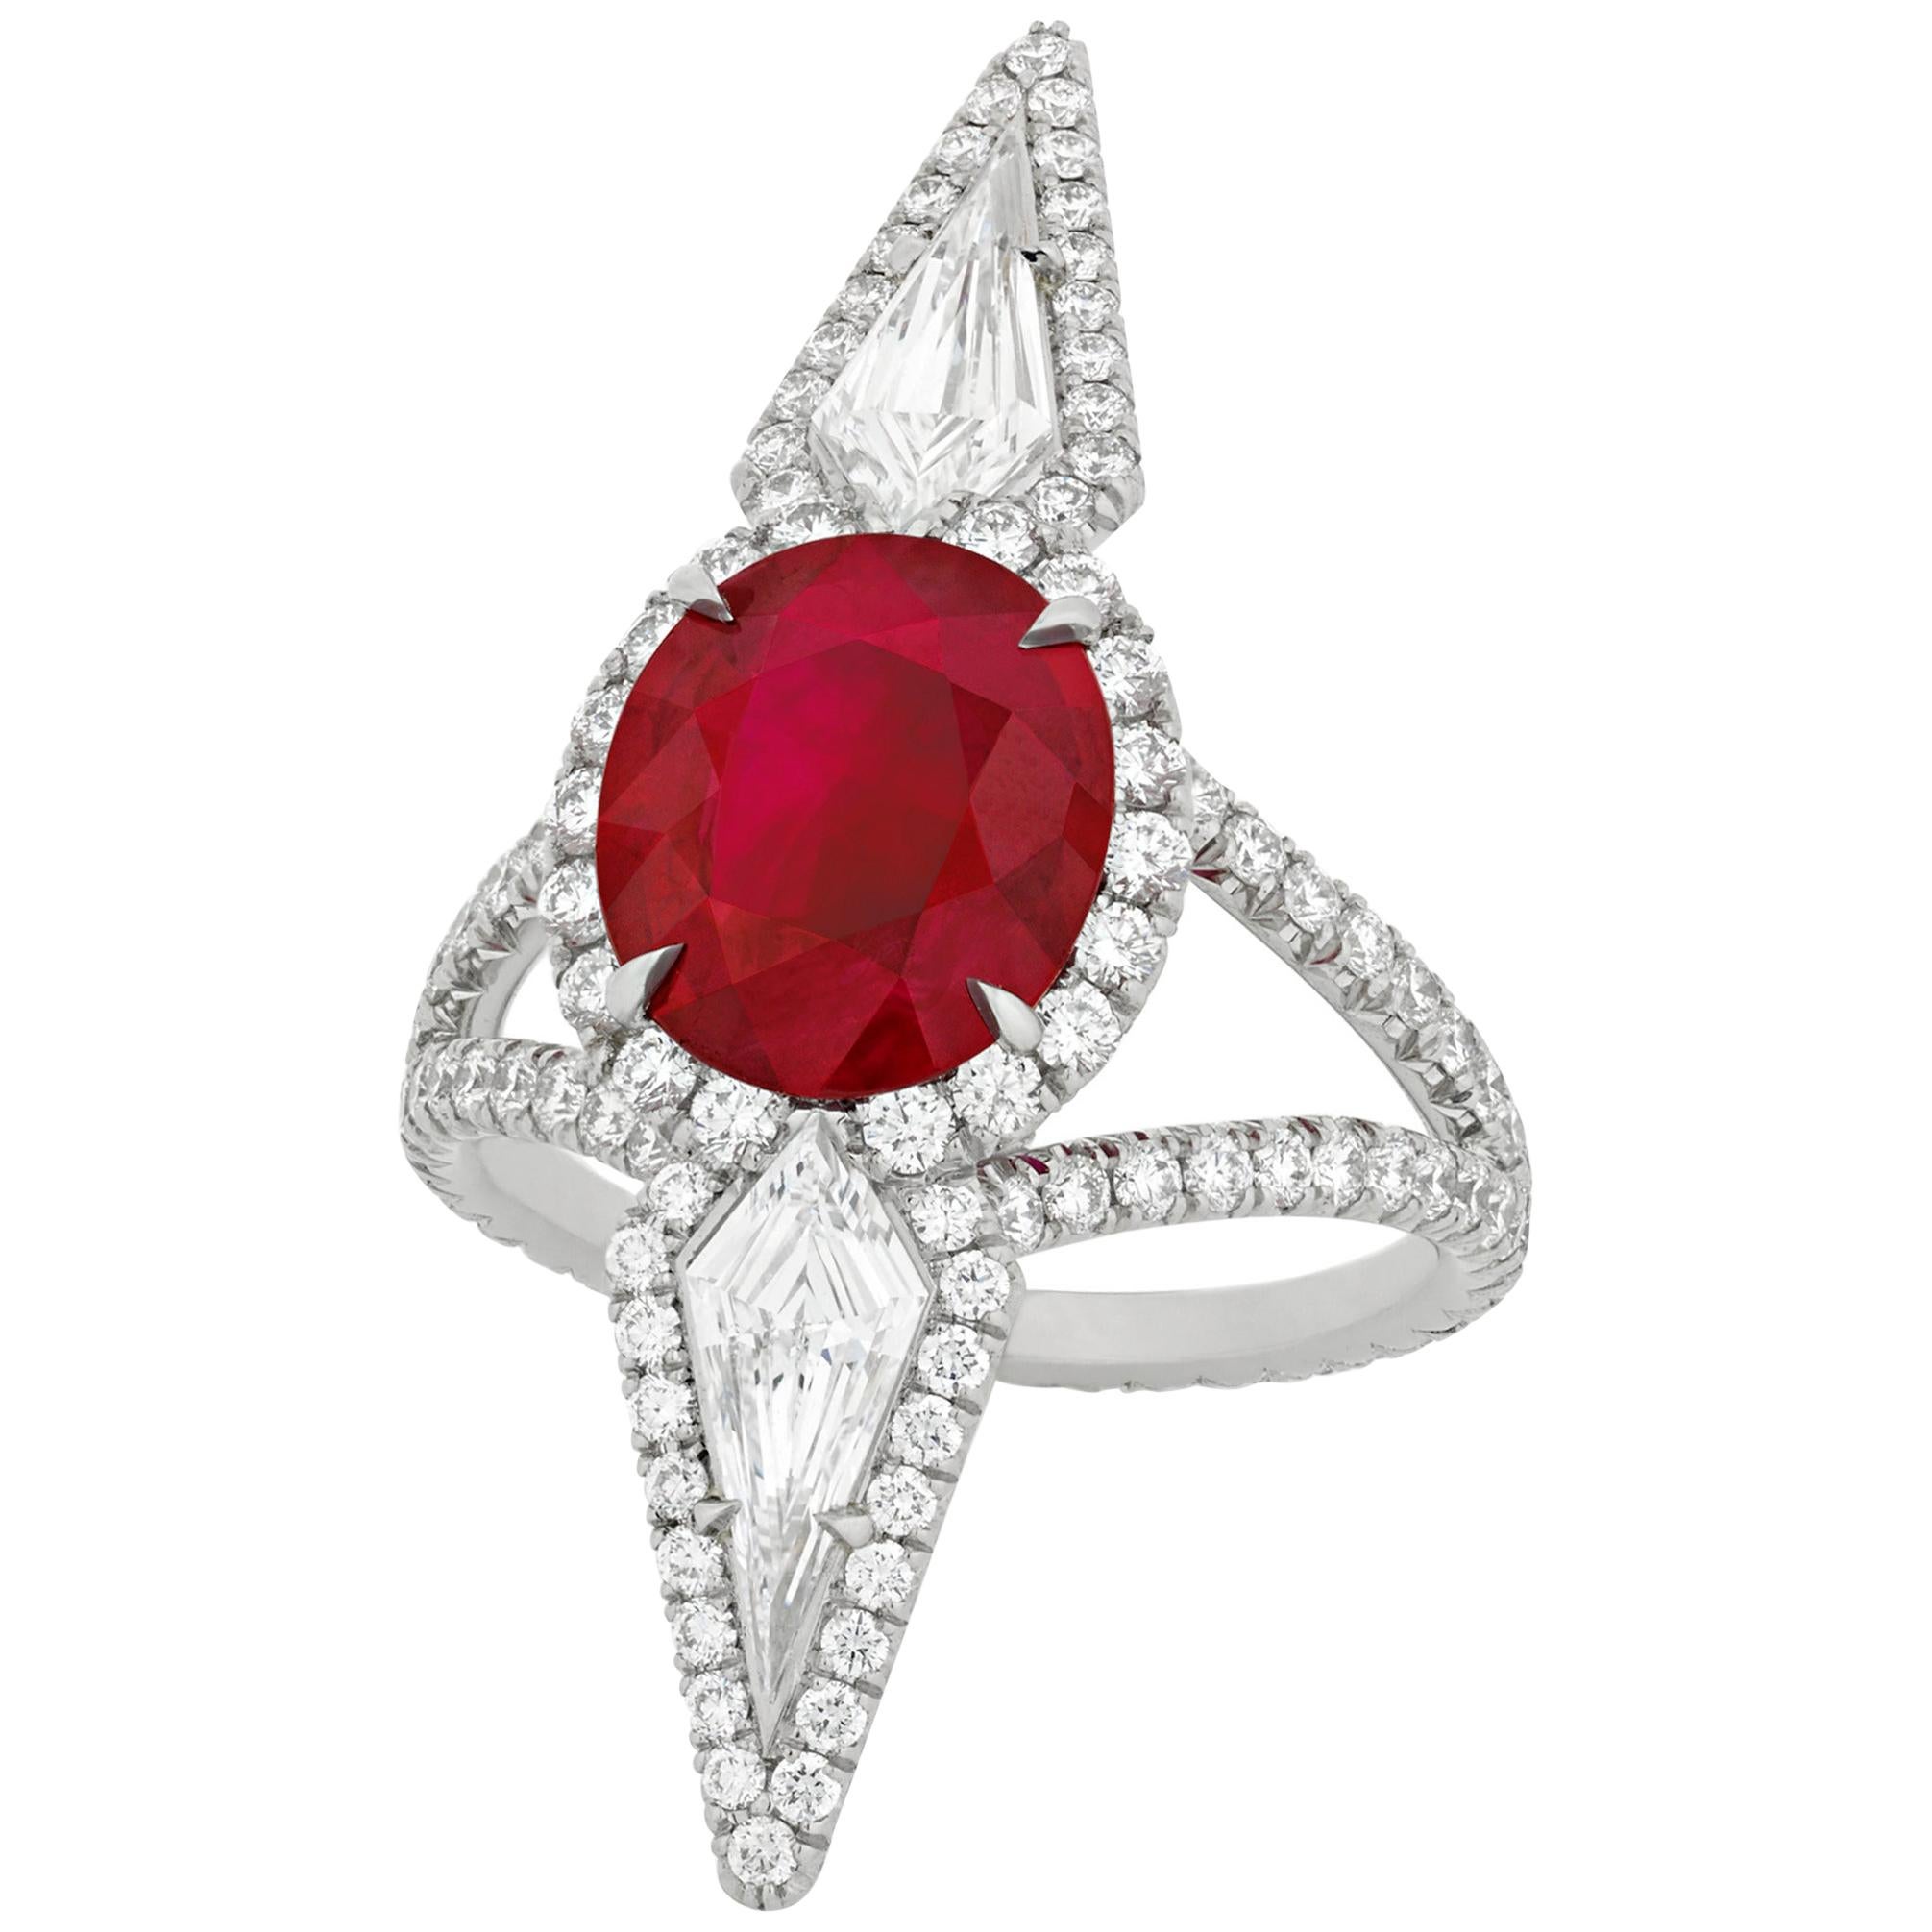 Bague en rubis de Birmanie couleur sang de pigeon et diamants de 3,16 carats